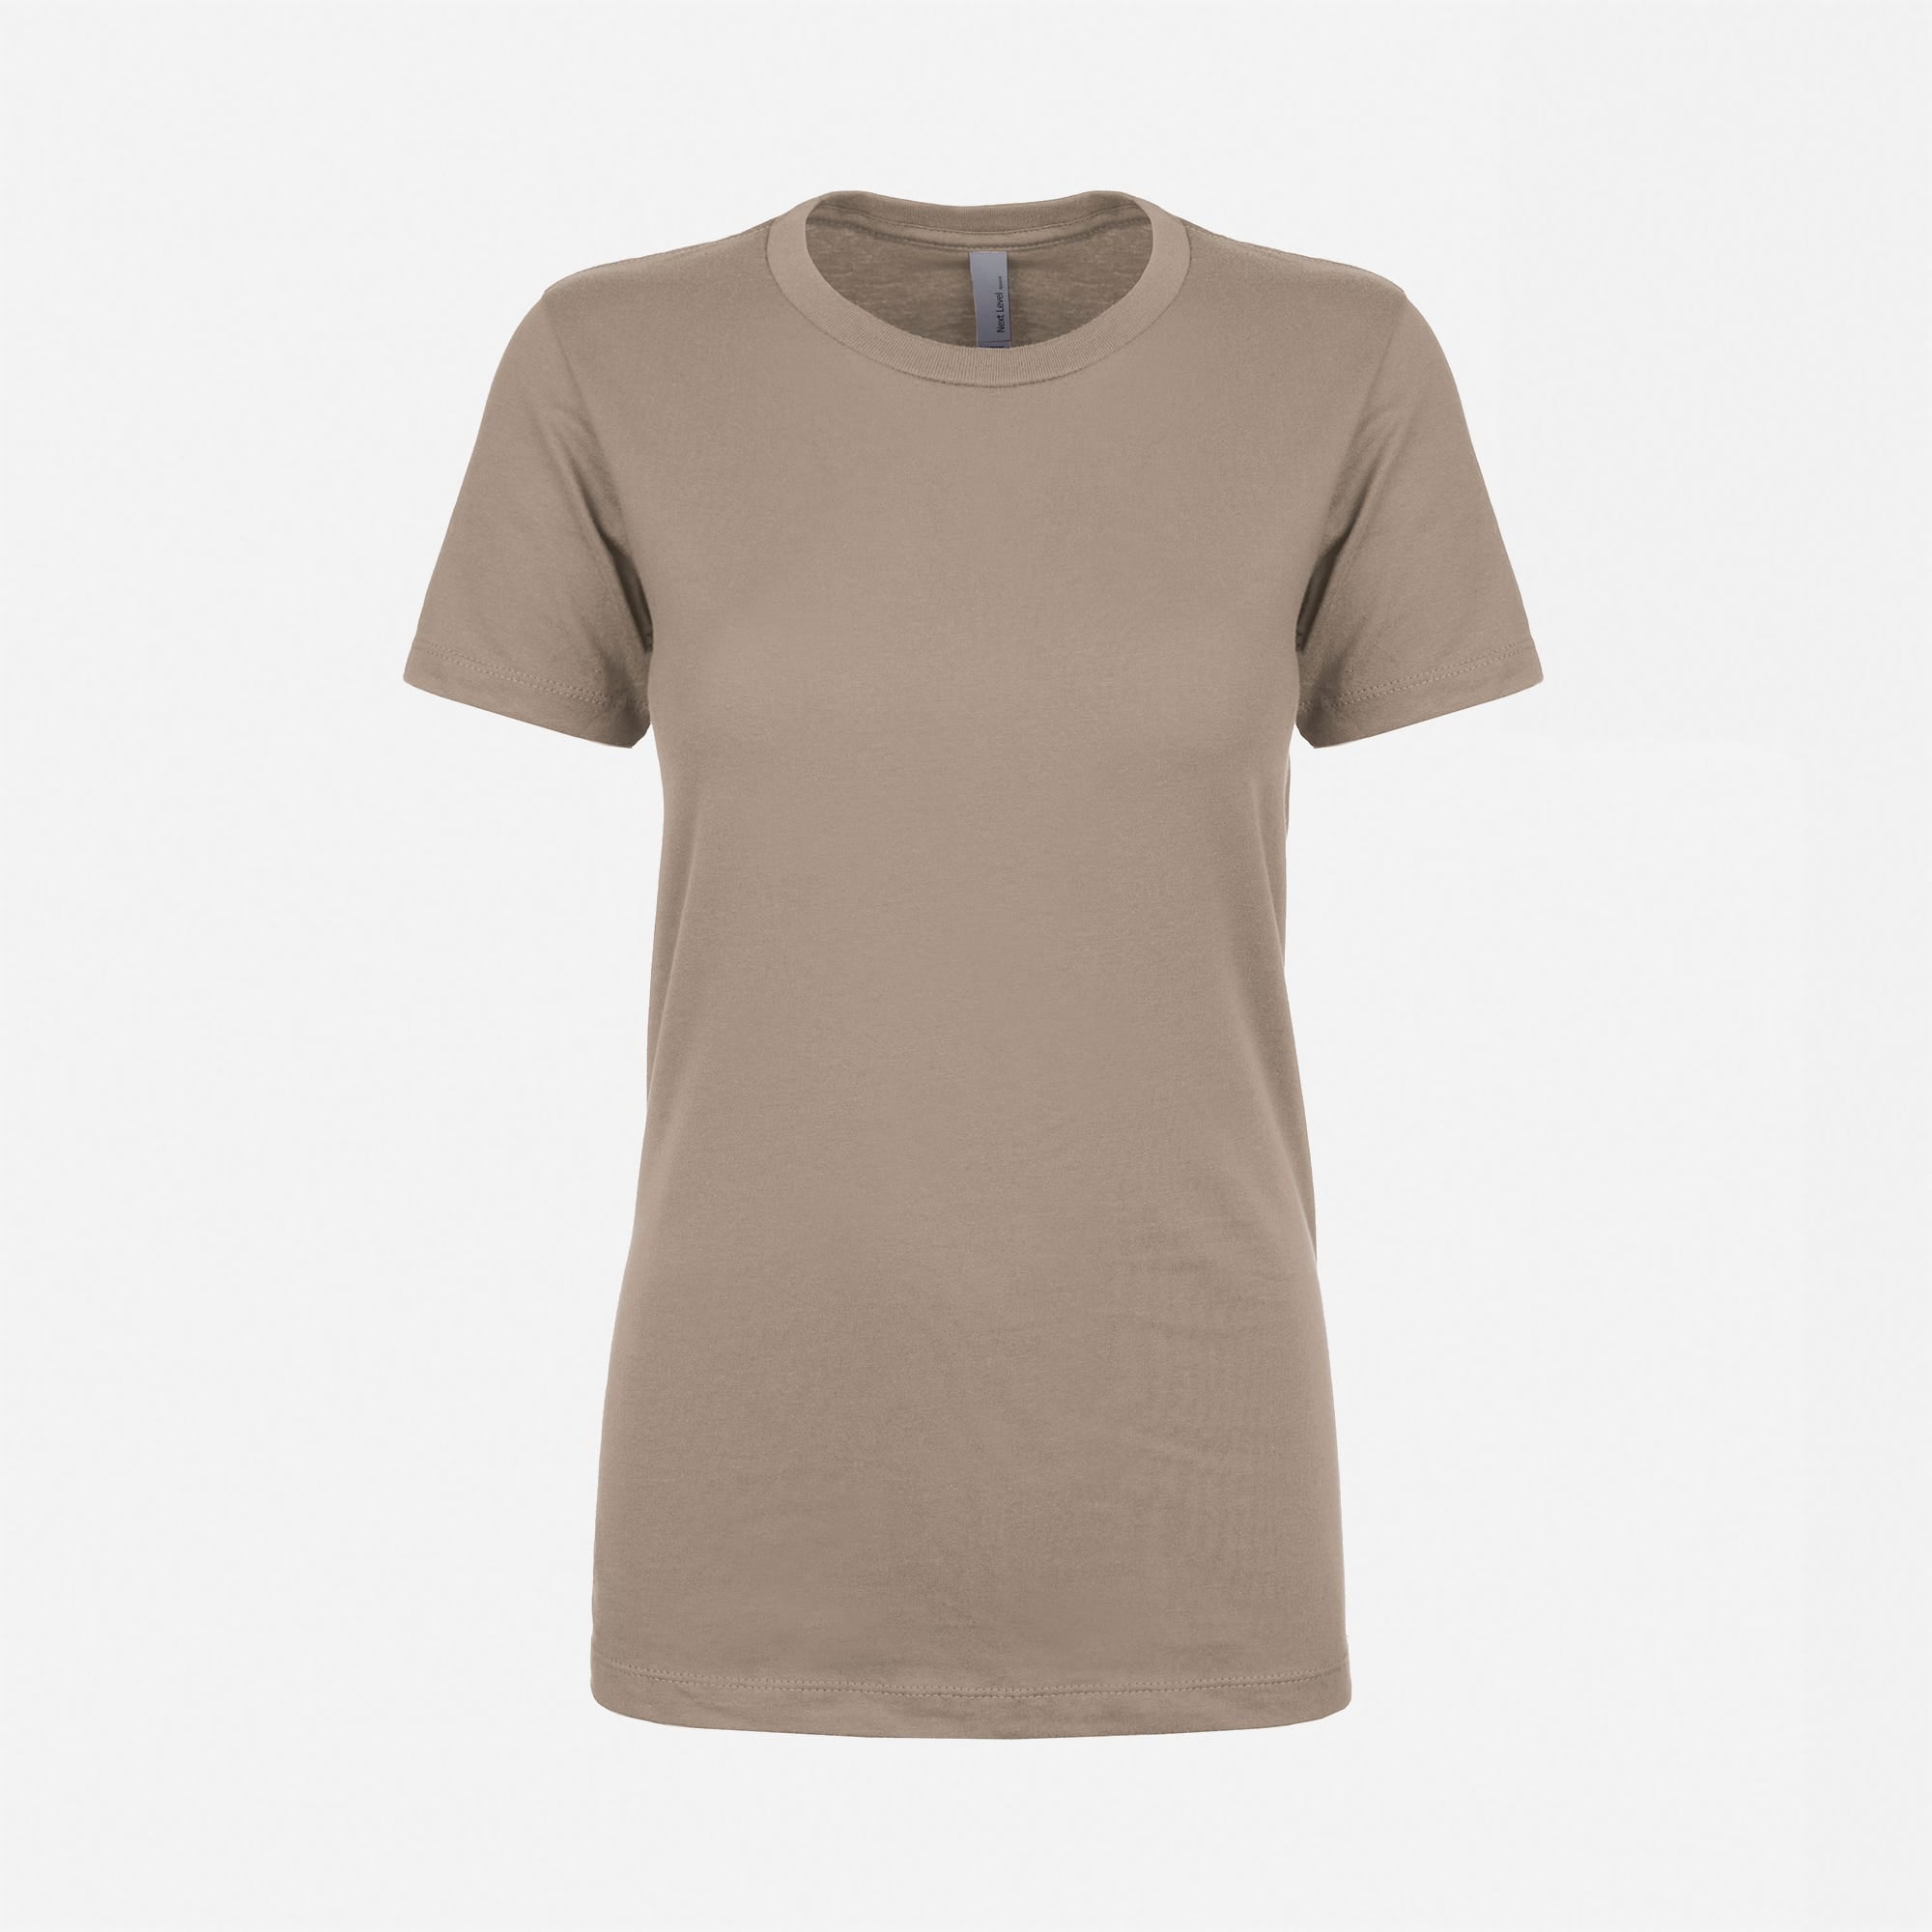 Cotton Boyfriend T-Shirt Warm Gray 3900 Next Level Apparel Women's Front View Wholesale